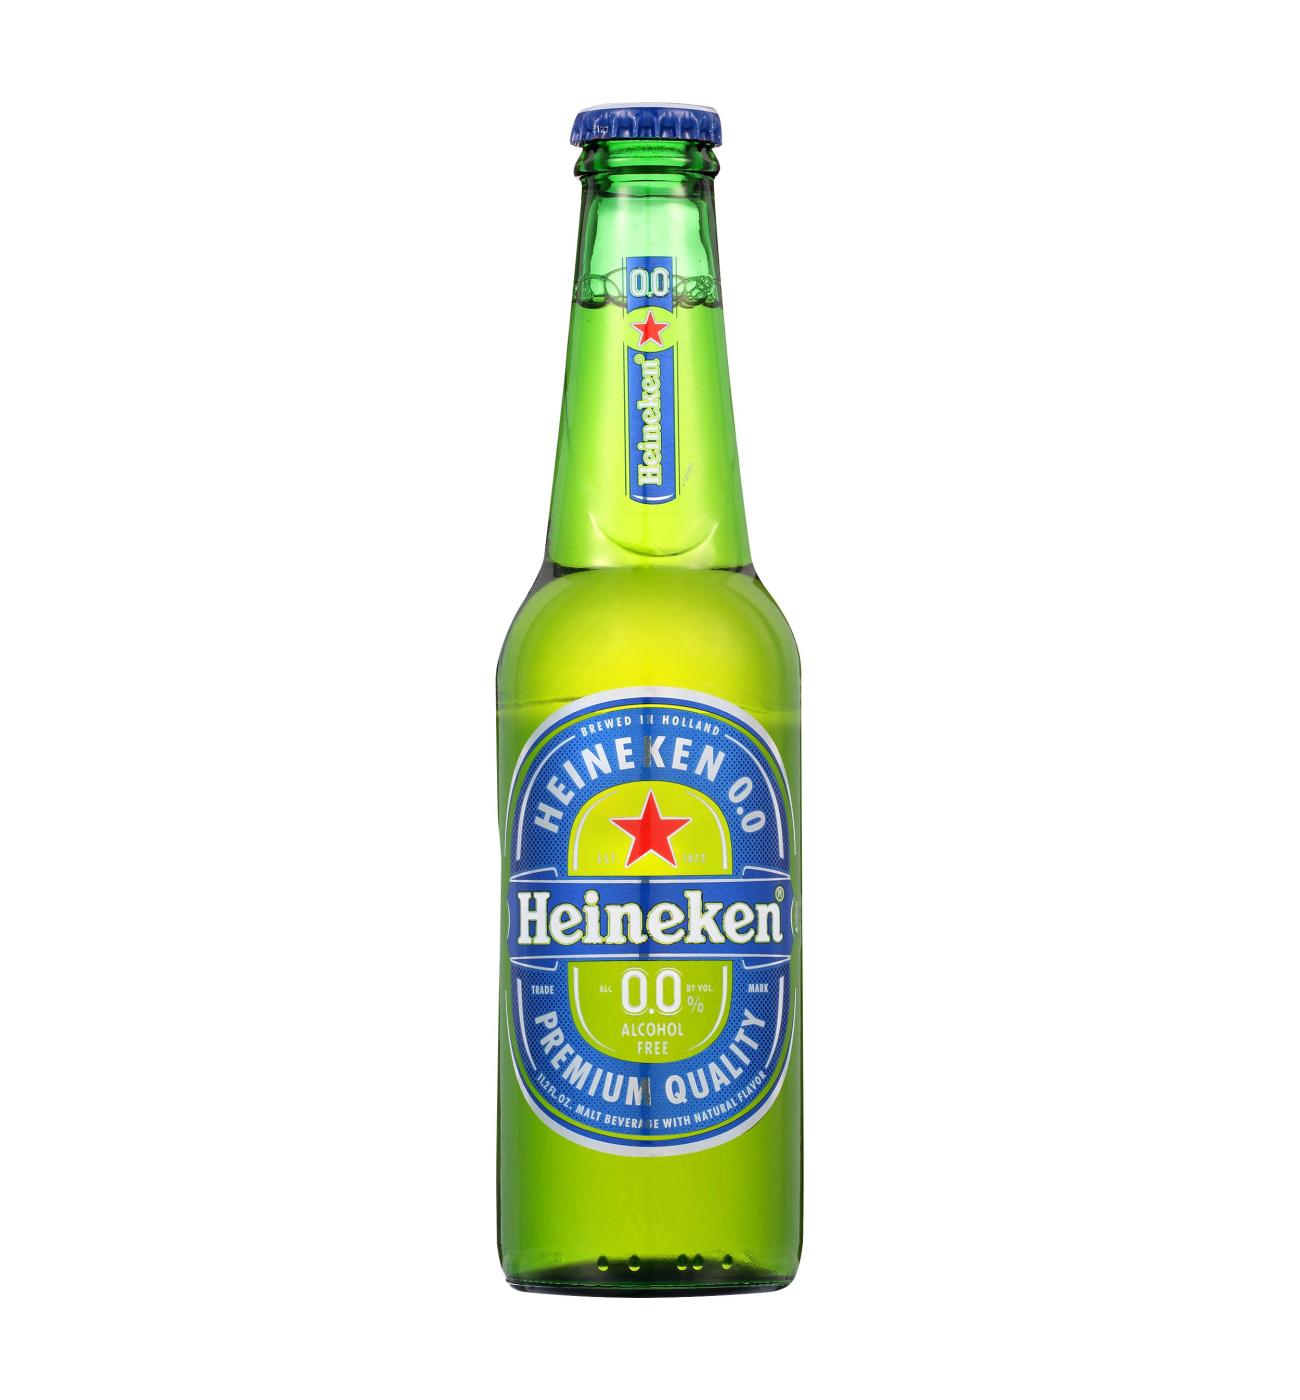 Heineken 0.0% Alcohol Free Beer 11.2 oz Bottles - Shop Beer at H-E-B